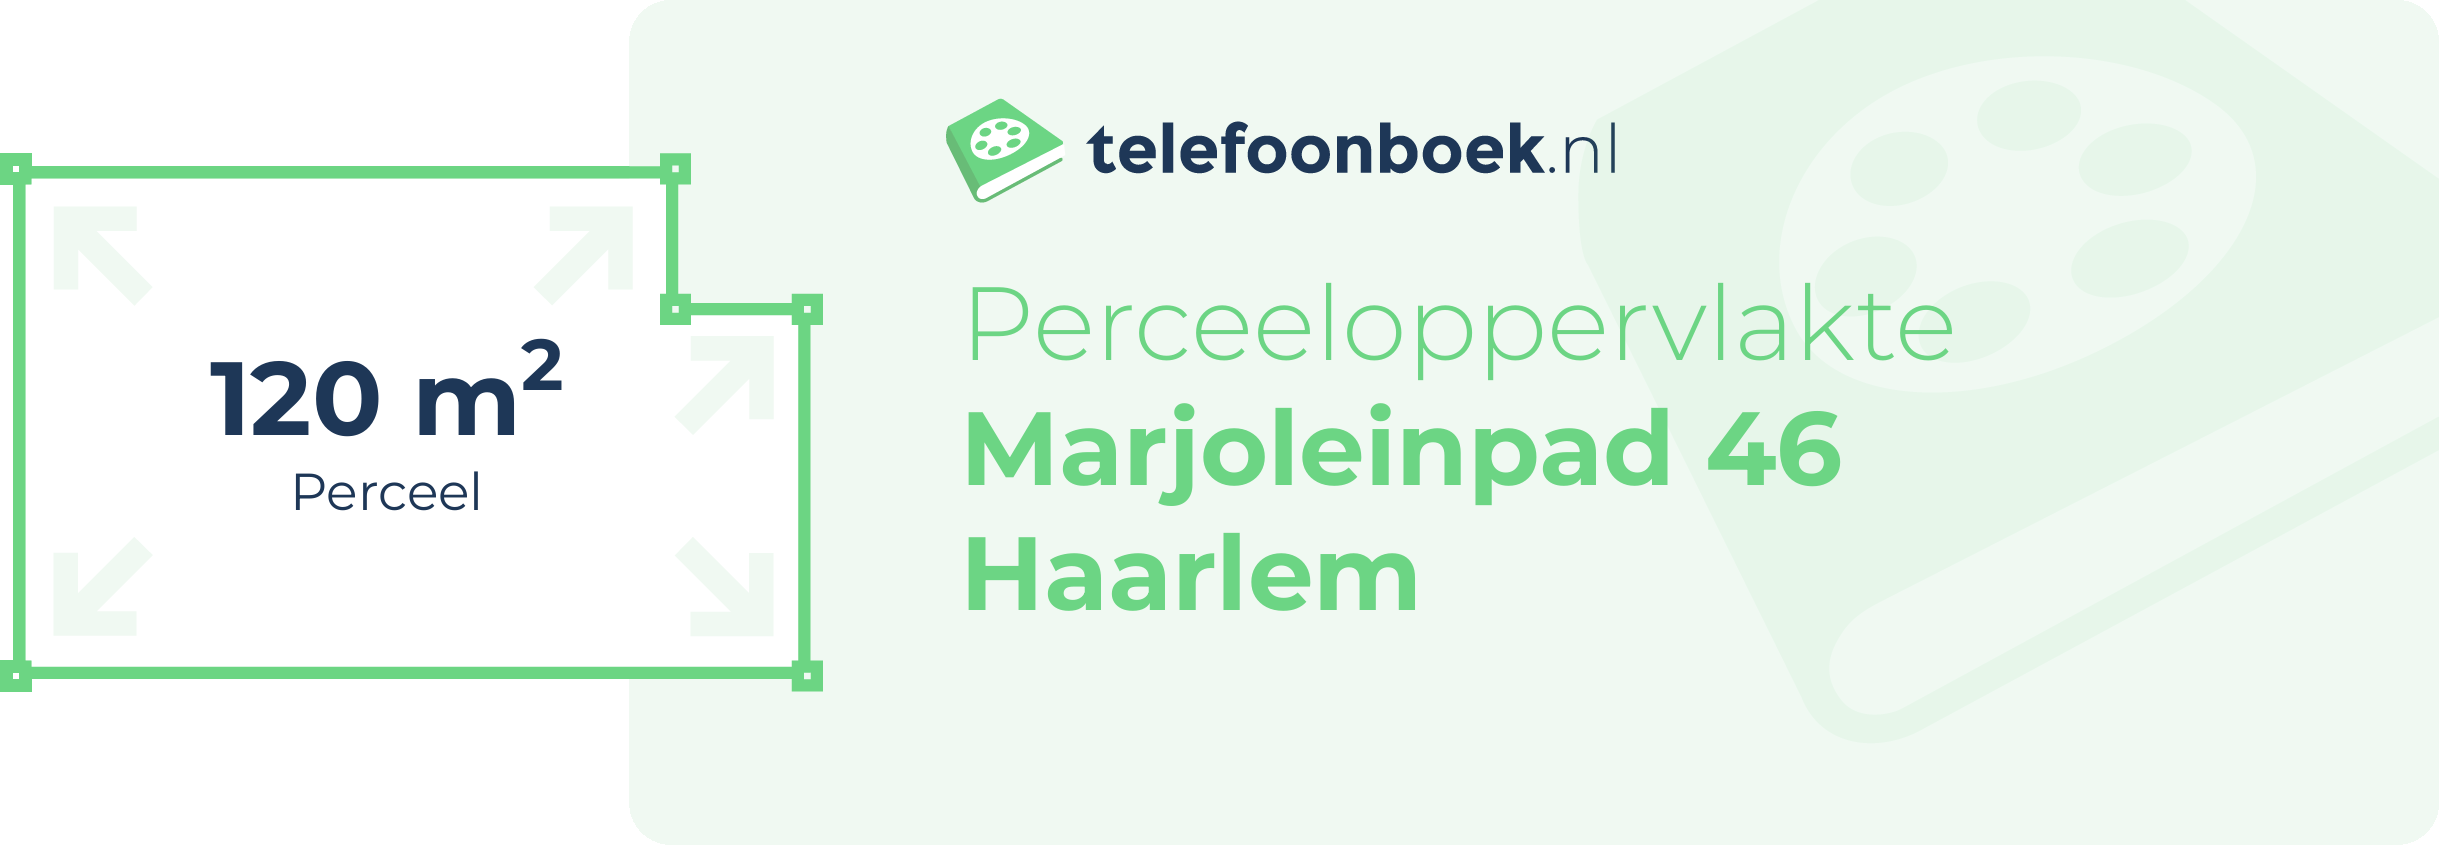 Perceeloppervlakte Marjoleinpad 46 Haarlem